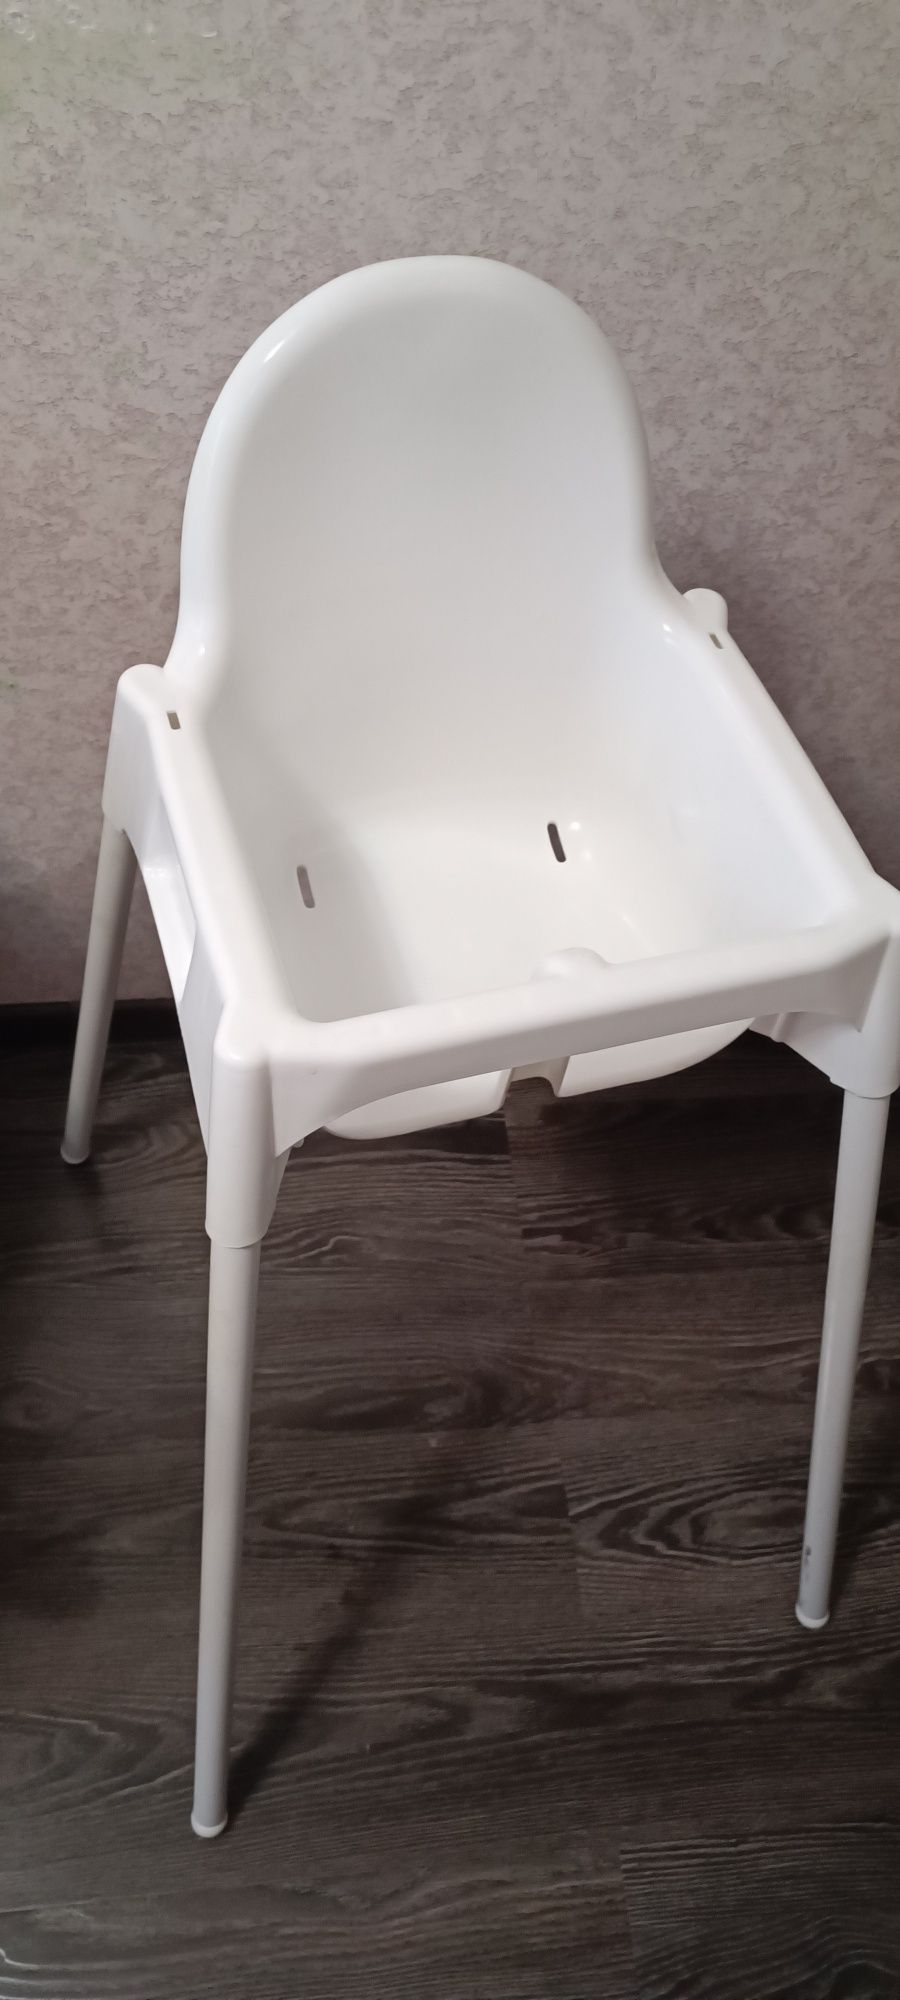 Продам детский обеденный стульчик IKEA